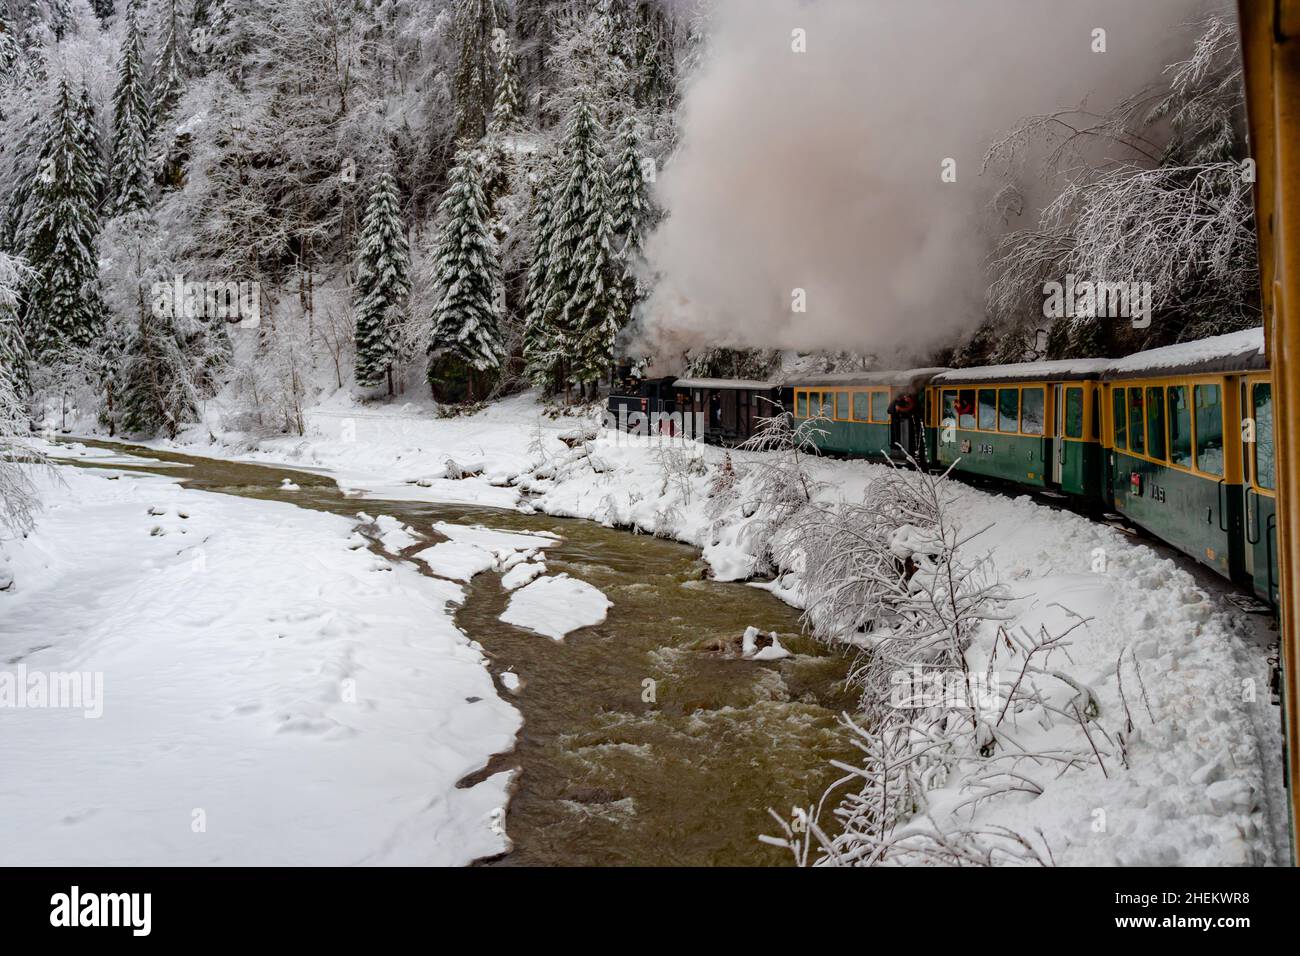 Foto de una locomotora de vapor de calibre estrecho, que cocer al vapor a través del paisaje invernal. La foto se tomó desde el tren mientras se estaba moviendo. Fotografía de un touristi Foto de stock